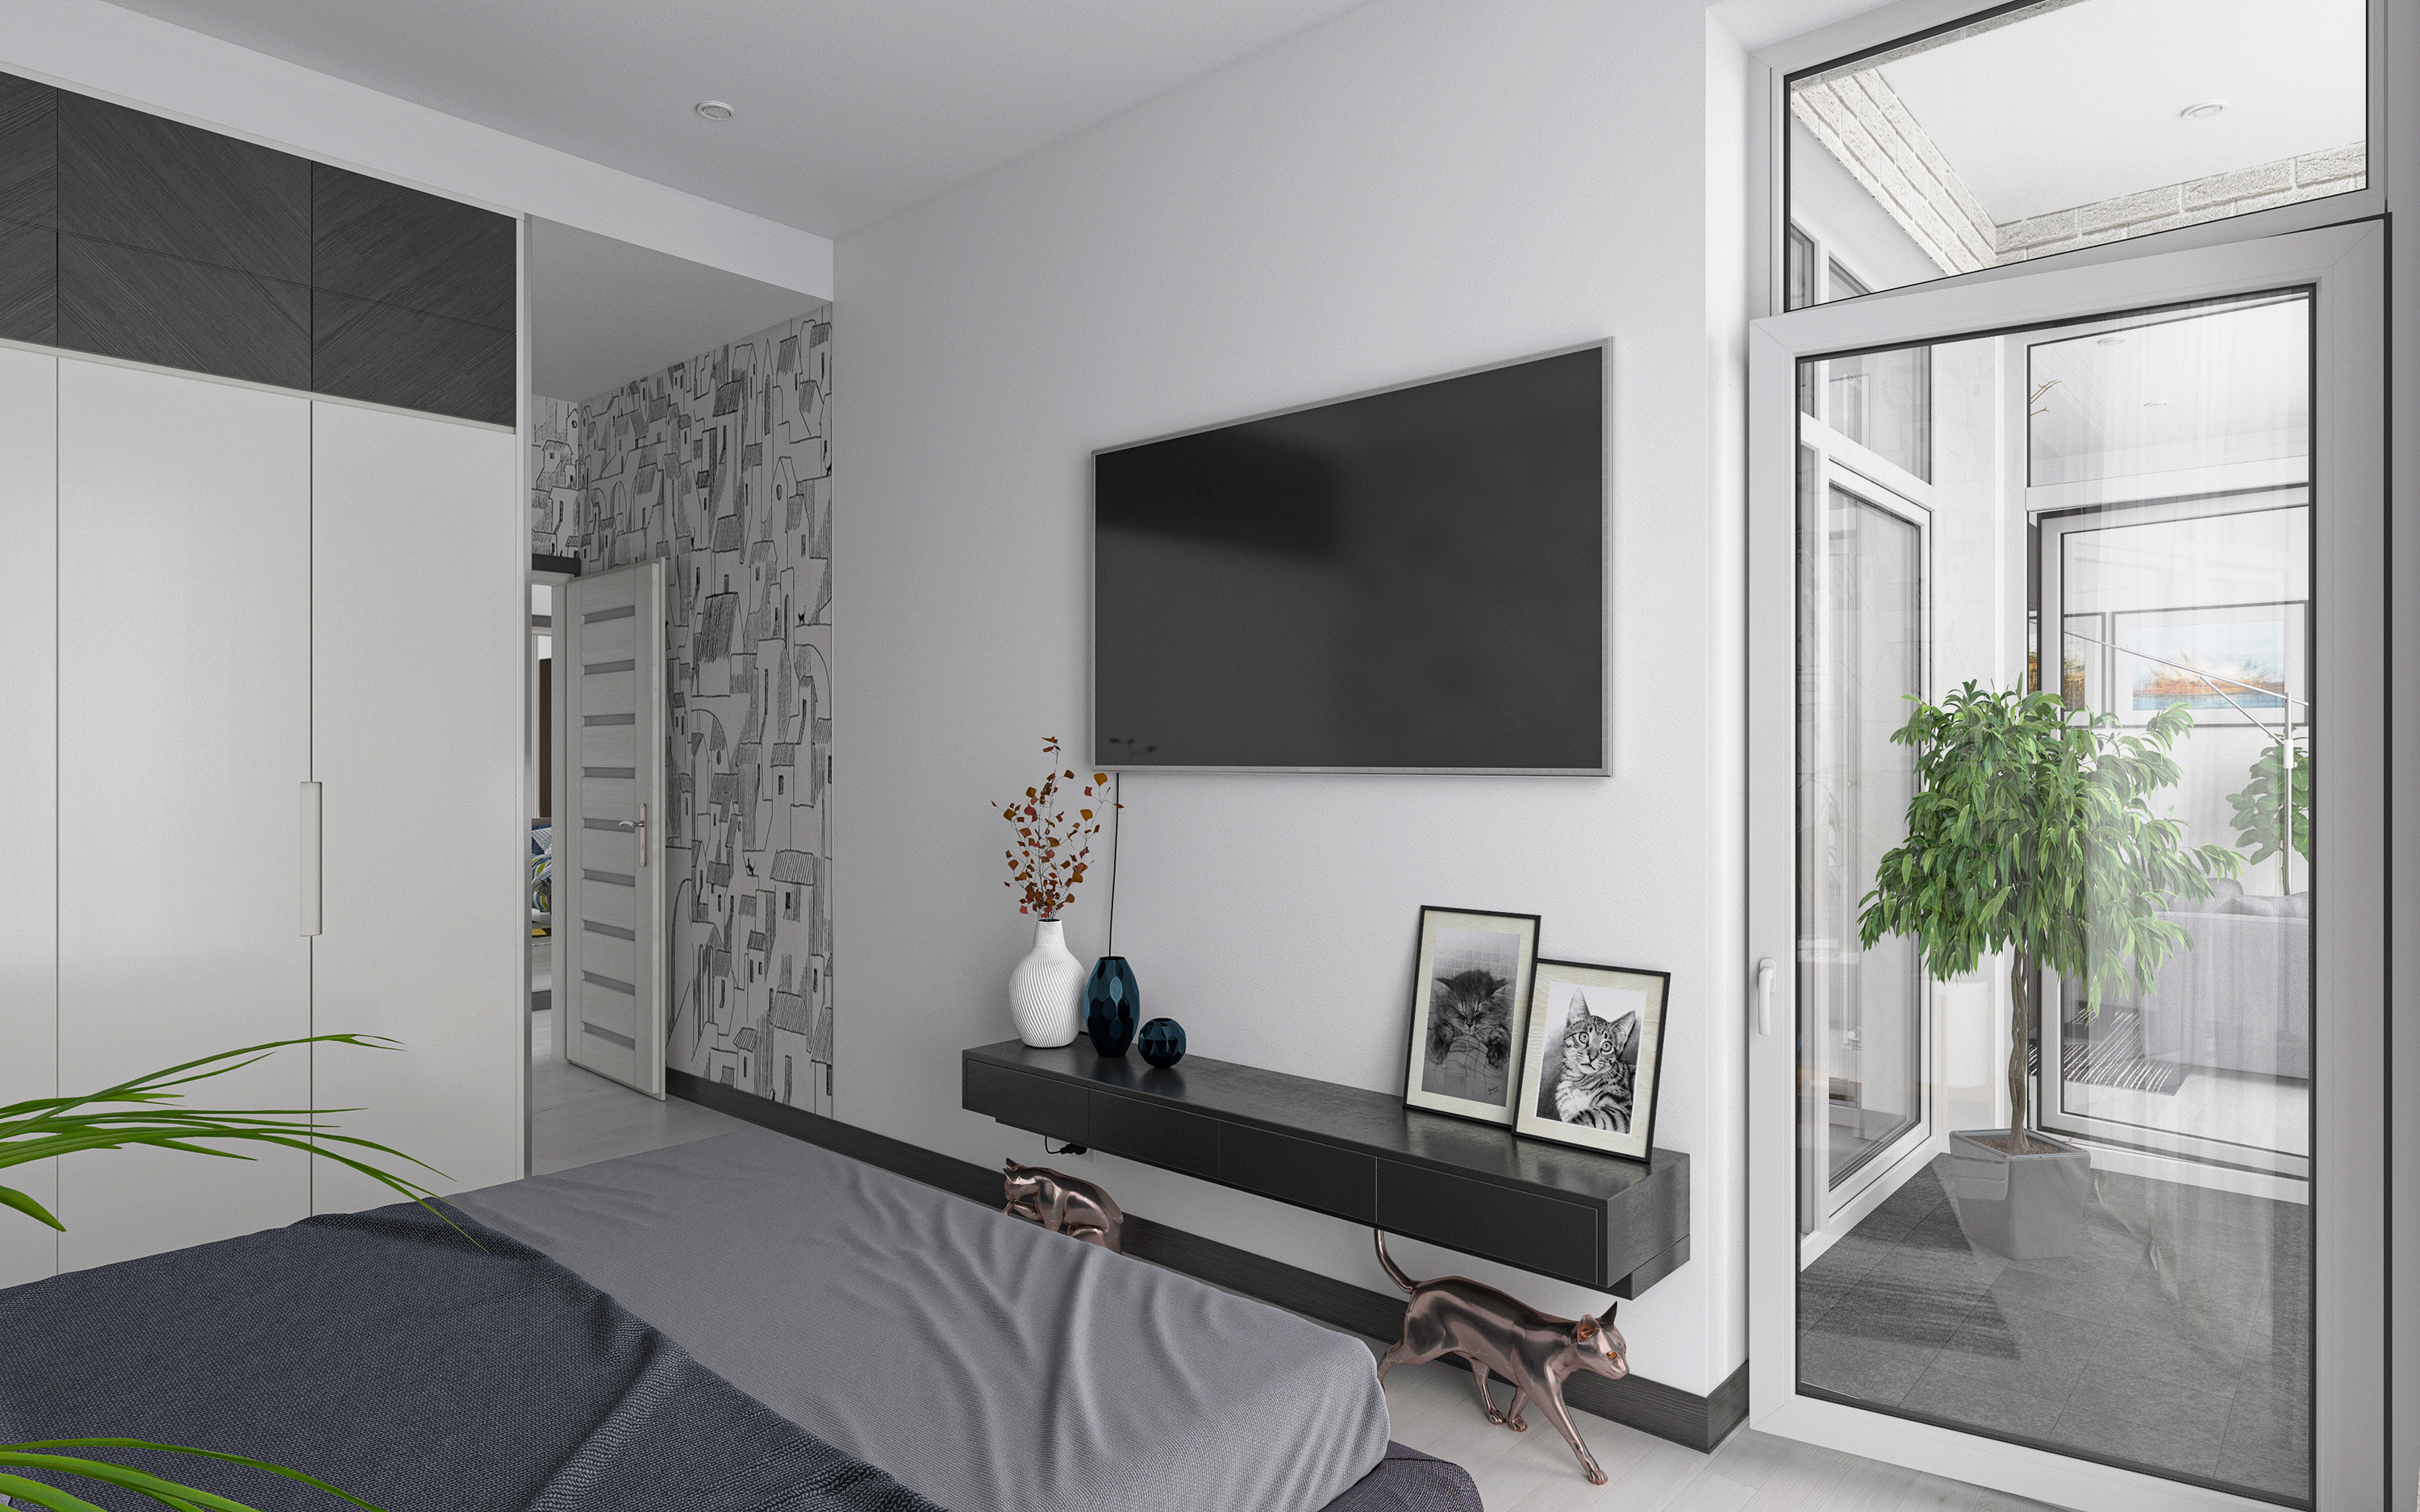 तीन कमरे का अपार्टमेंट S64 3d max corona render में प्रस्तुत छवि